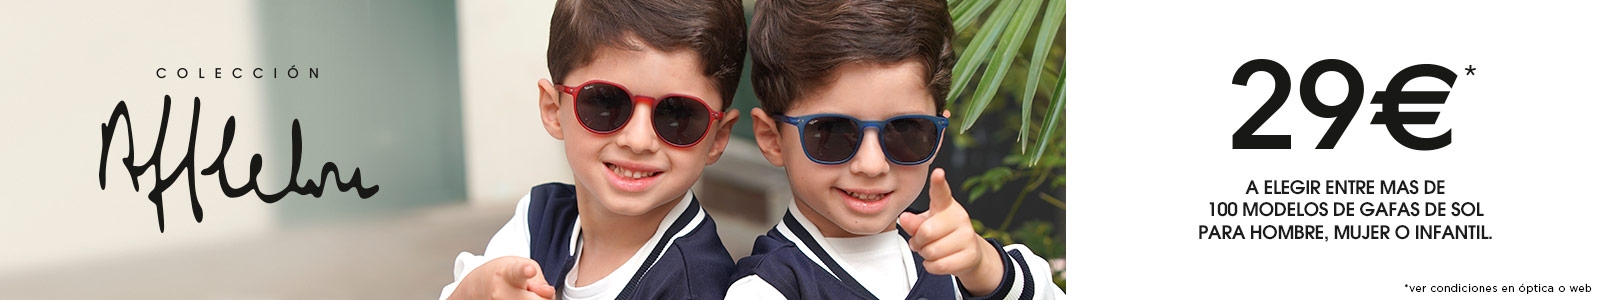 Gafas de sol de niños desde 29€